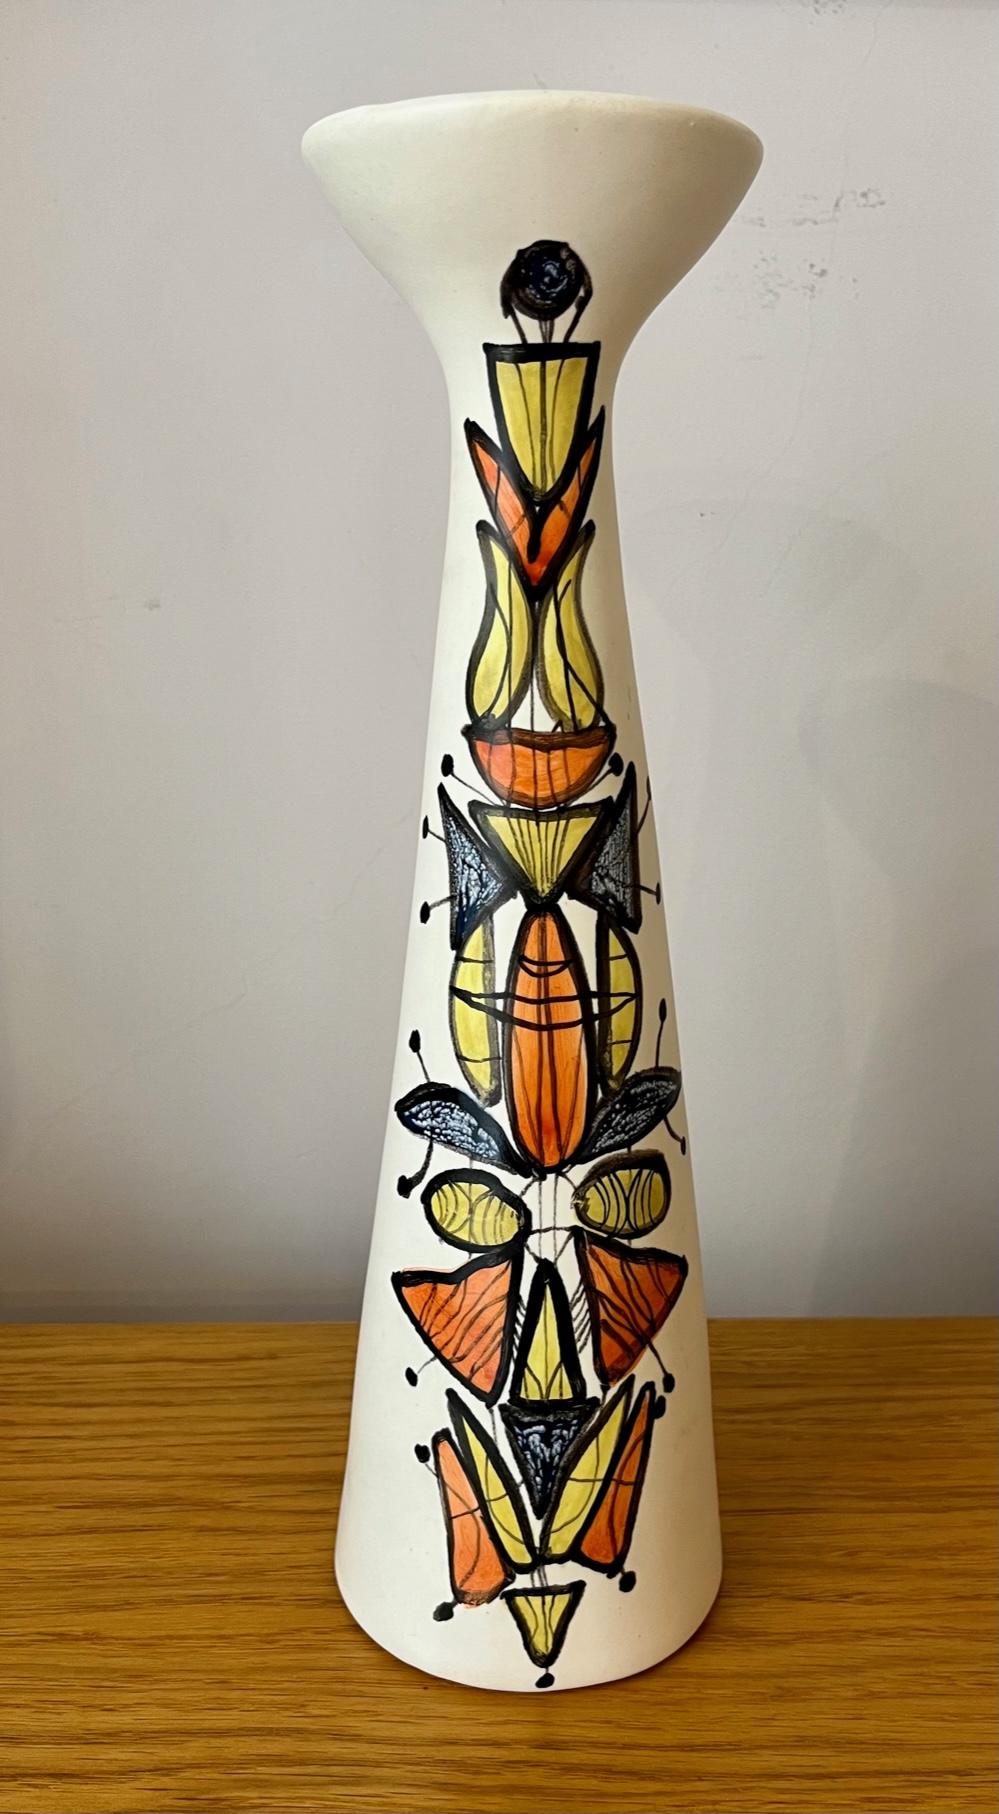 Keramikvase (oder Flasche) von Roger Capron.`
Konische Form mit breitem Kragen 
Weiß glasierte Keramik mit polychromem Dekor
unterzeichnet 